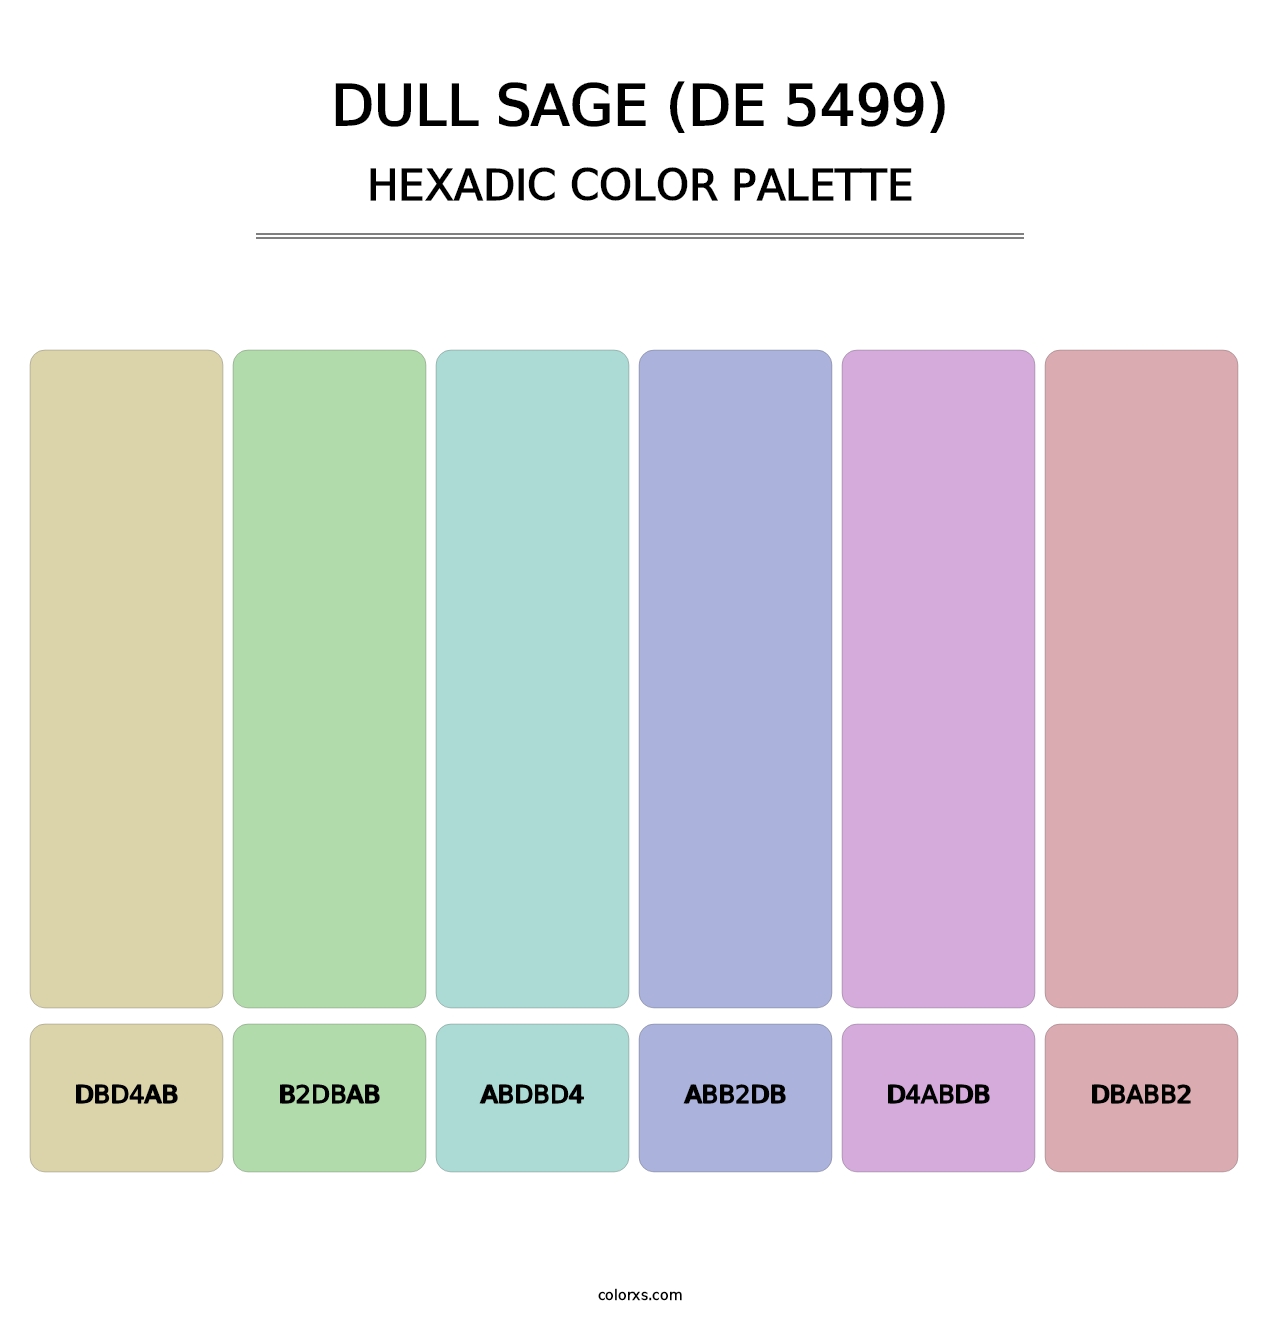 Dull Sage (DE 5499) - Hexadic Color Palette